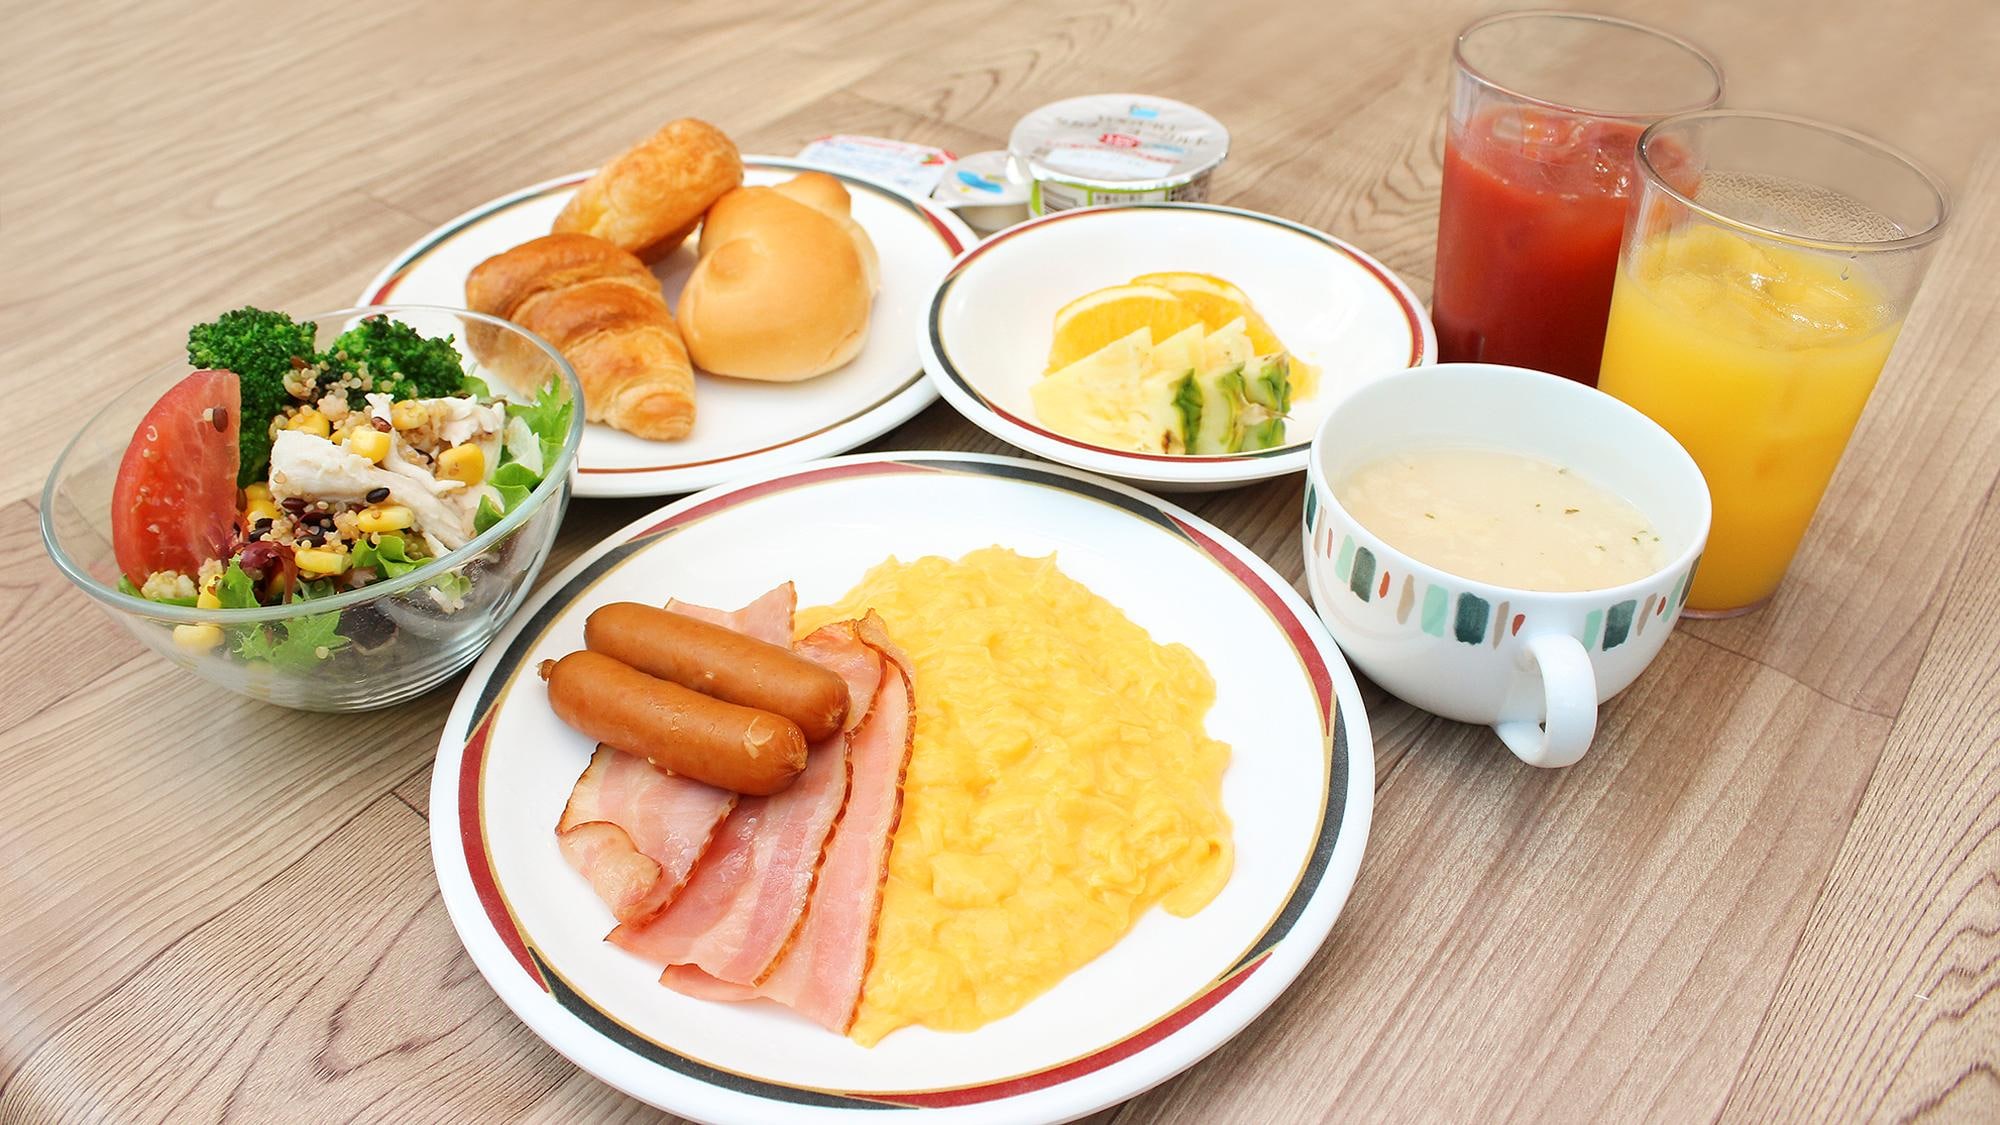 ■ Breakfast buffet